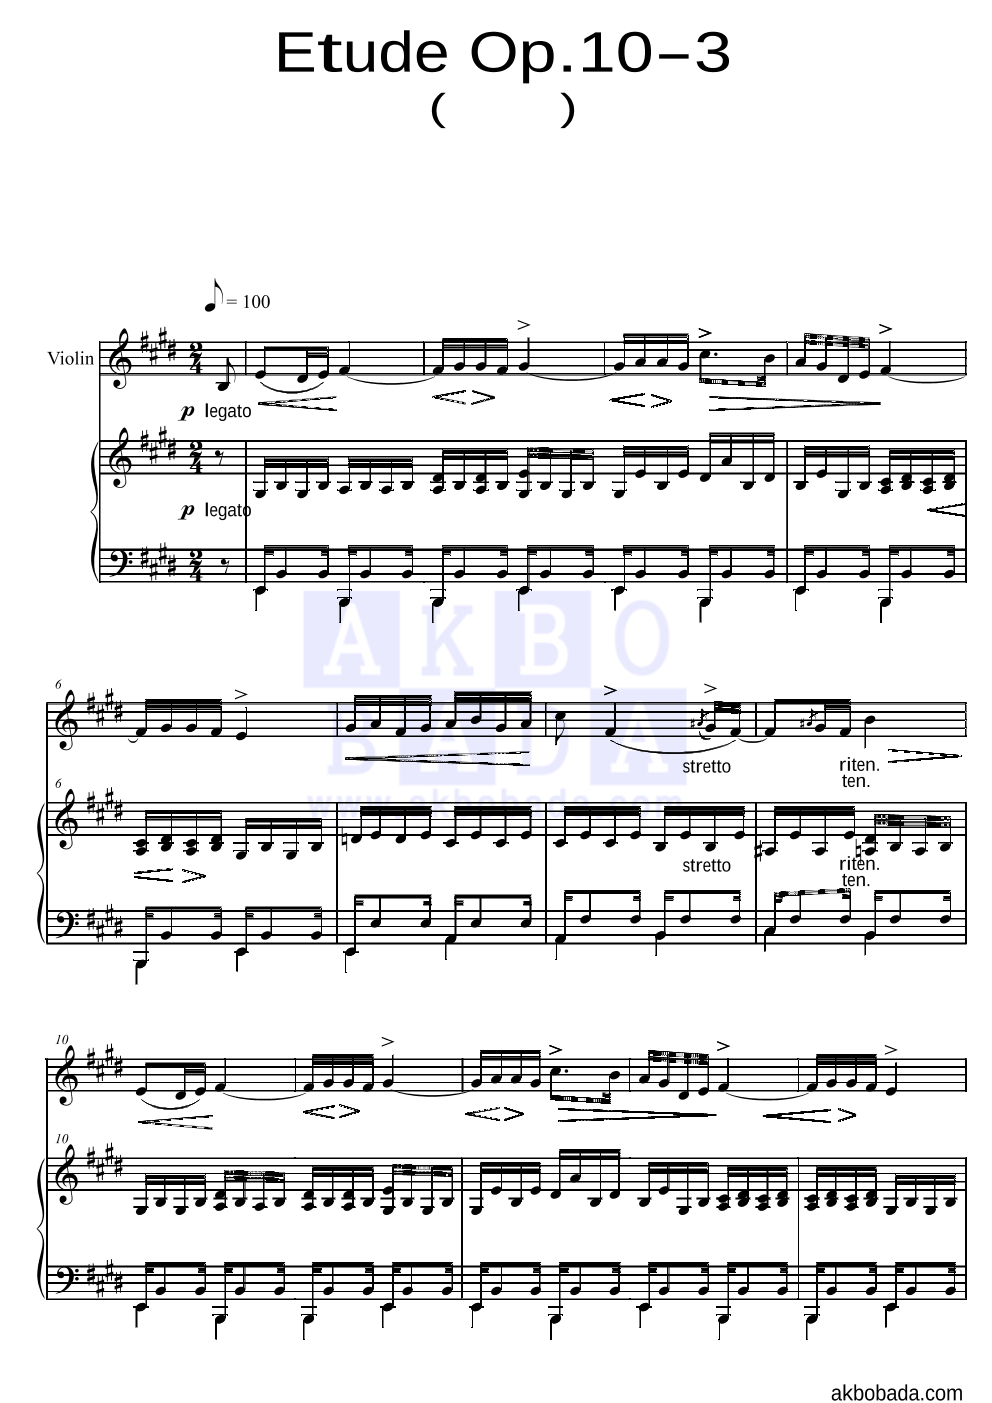 쇼팽 - Etude Op.10 No.3(이별곡) 바이올린&피아노 악보 